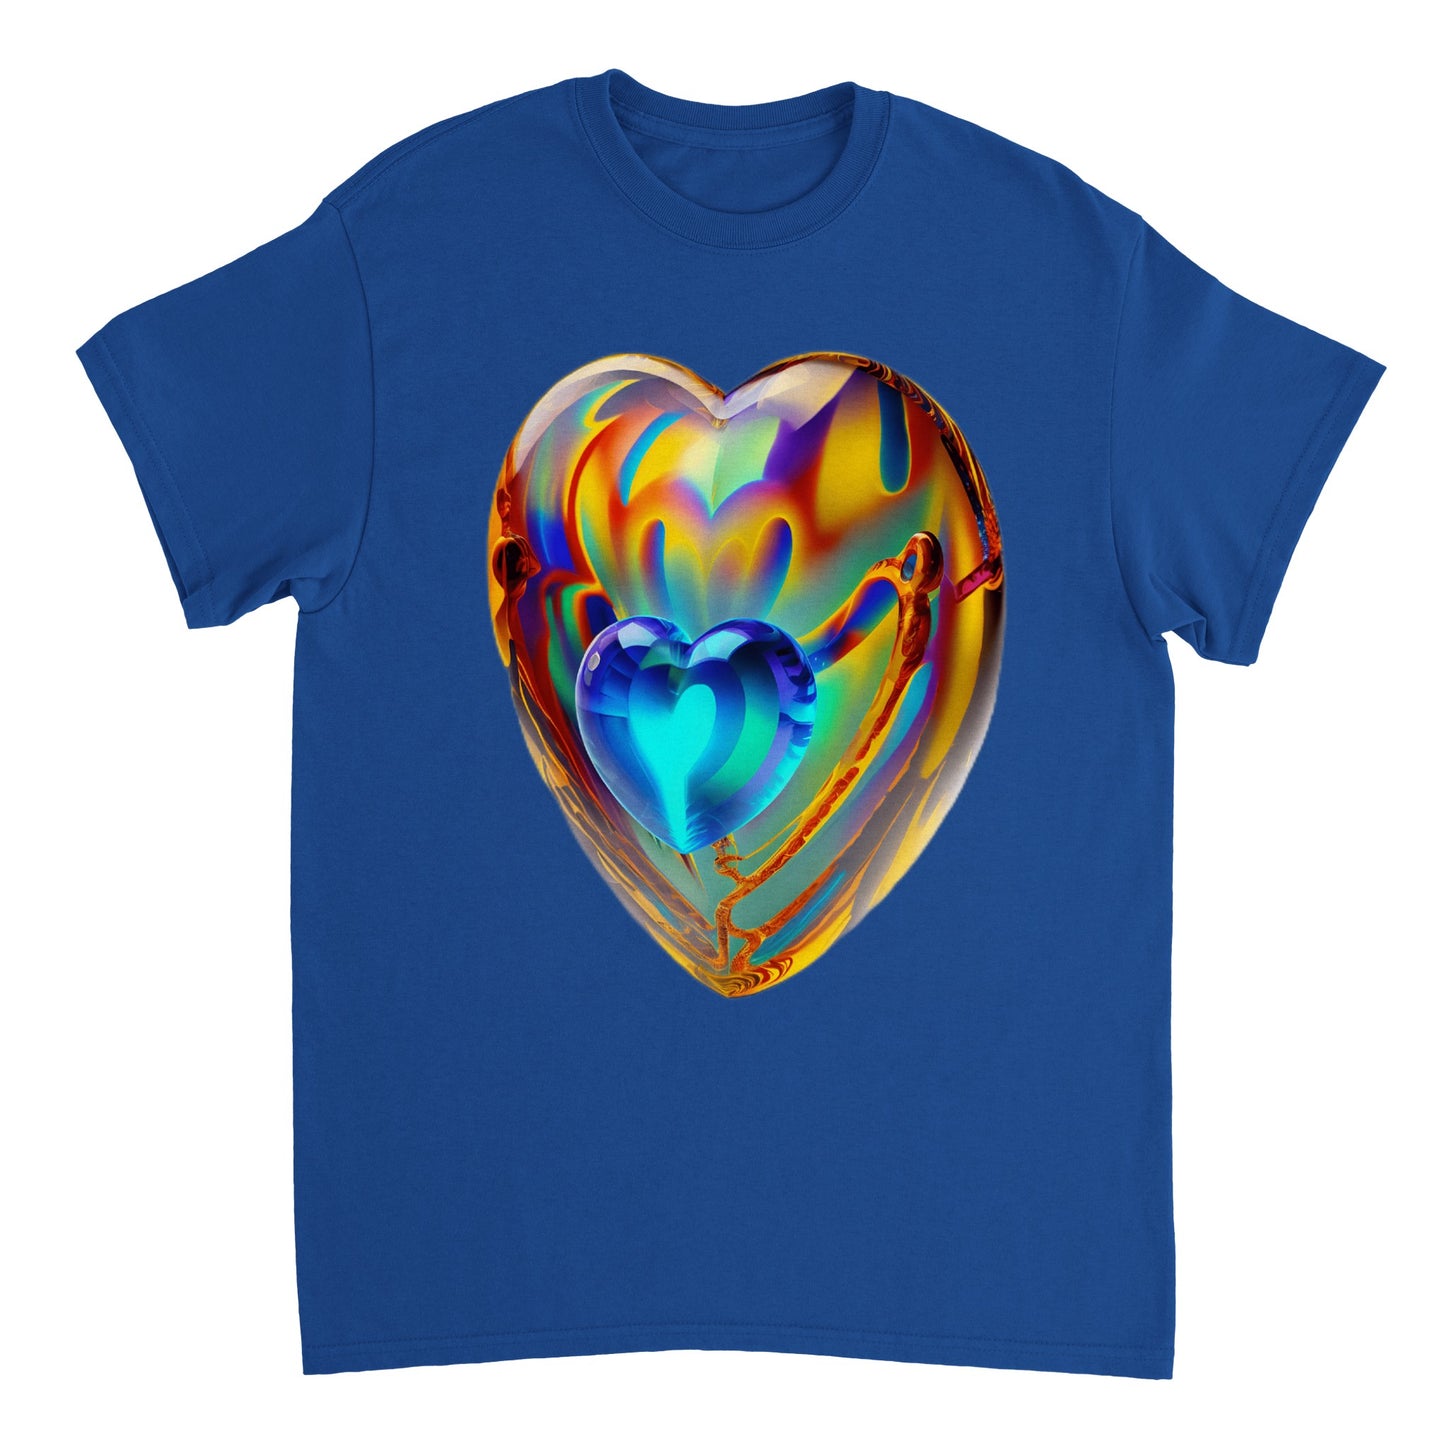 Love Heart - Heavyweight Unisex Crewneck T-shirt 36